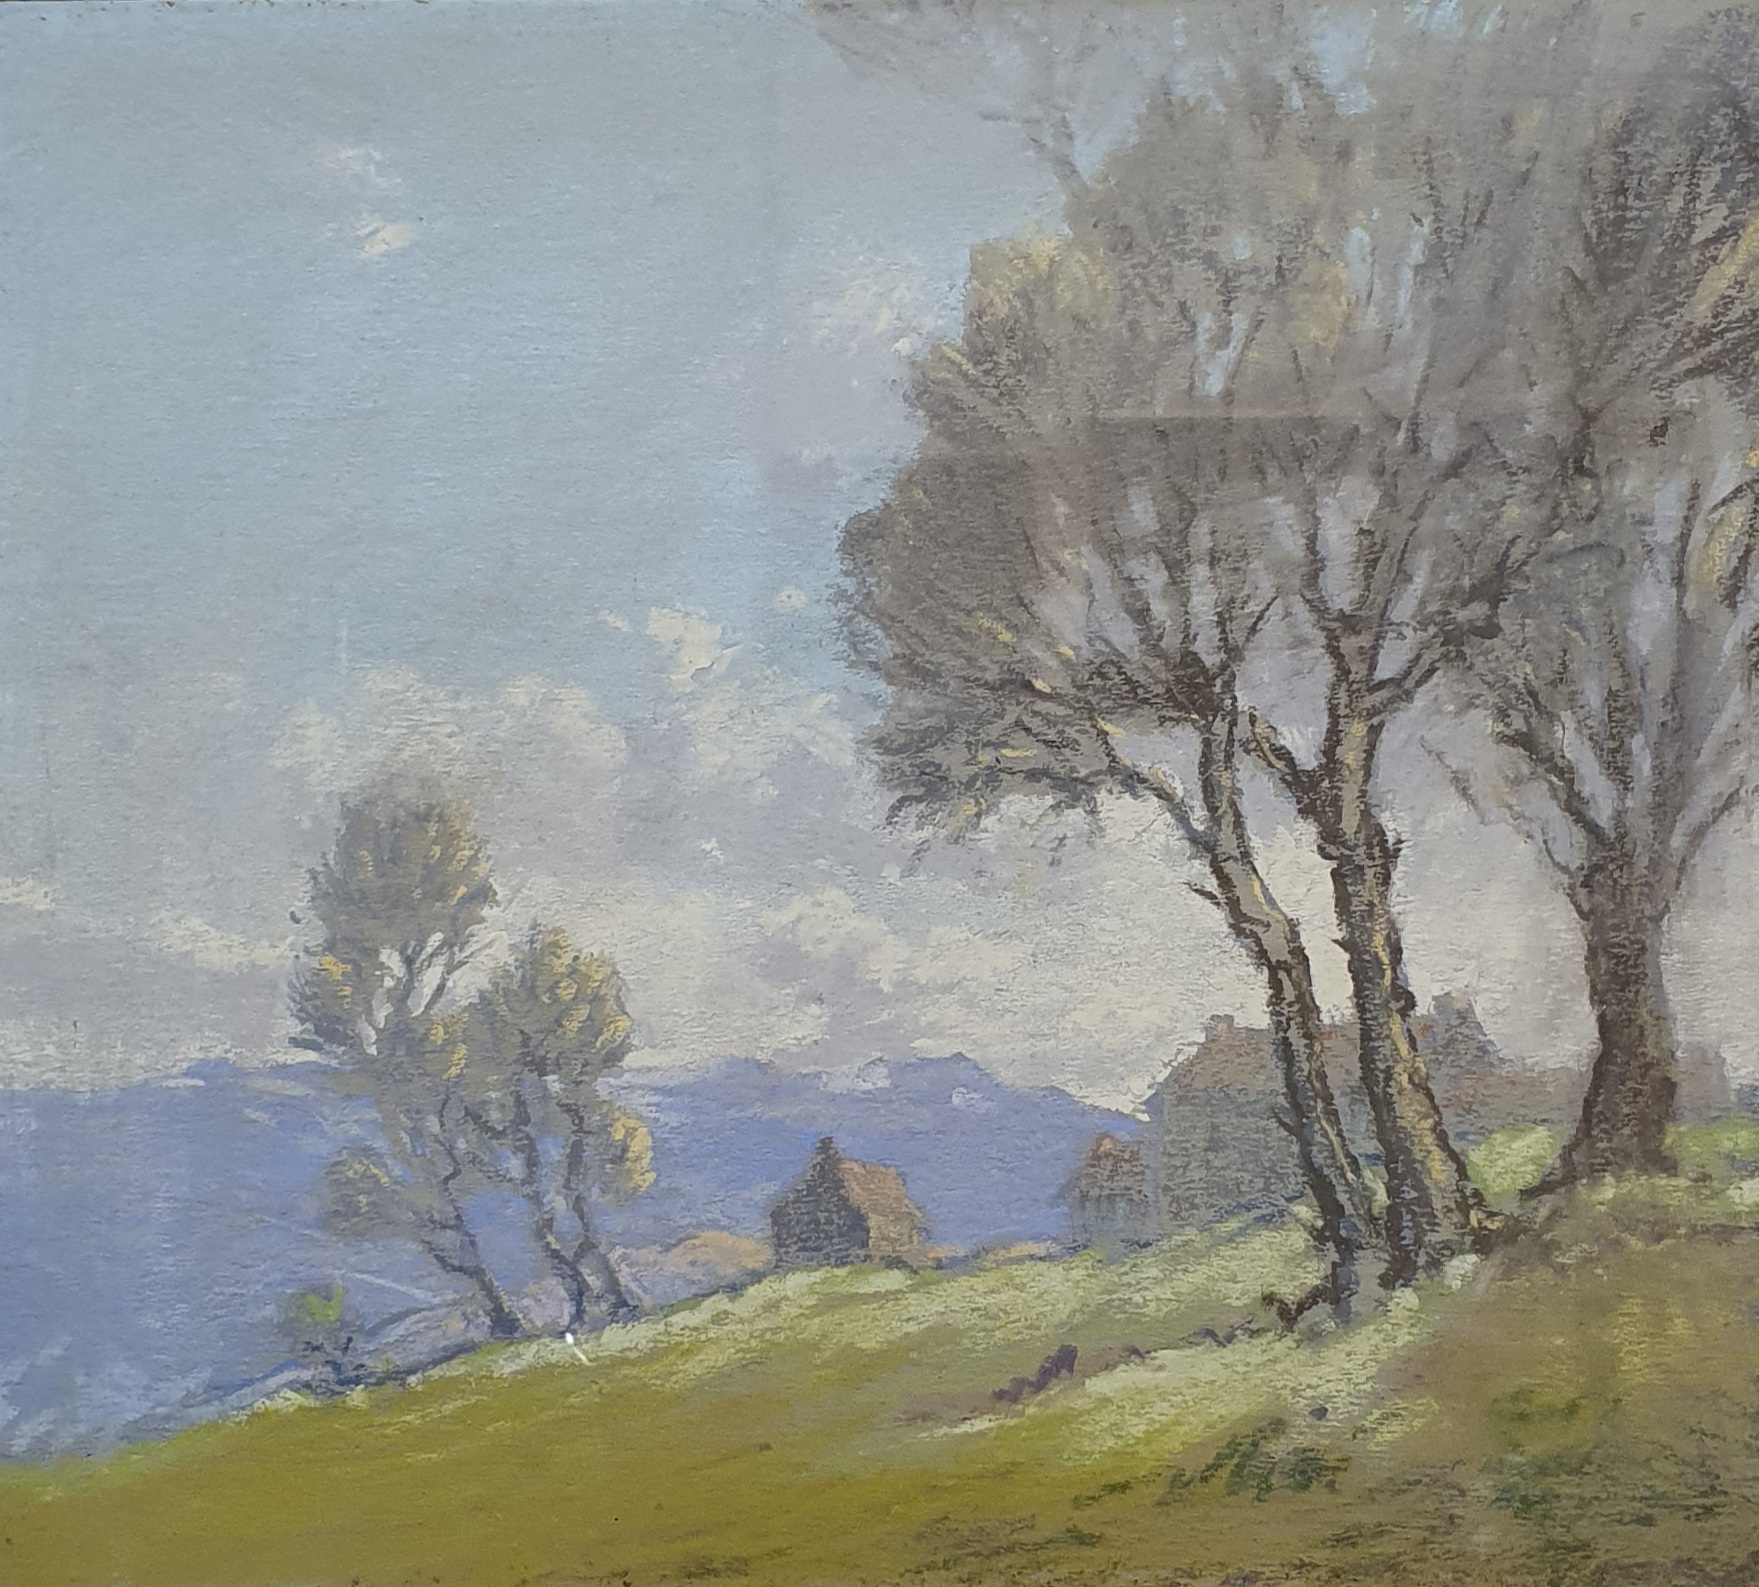 Robert Leslie Howey, dales landscape, pastel, signed on the mount, 22 x 24 cm - Image 2 of 7